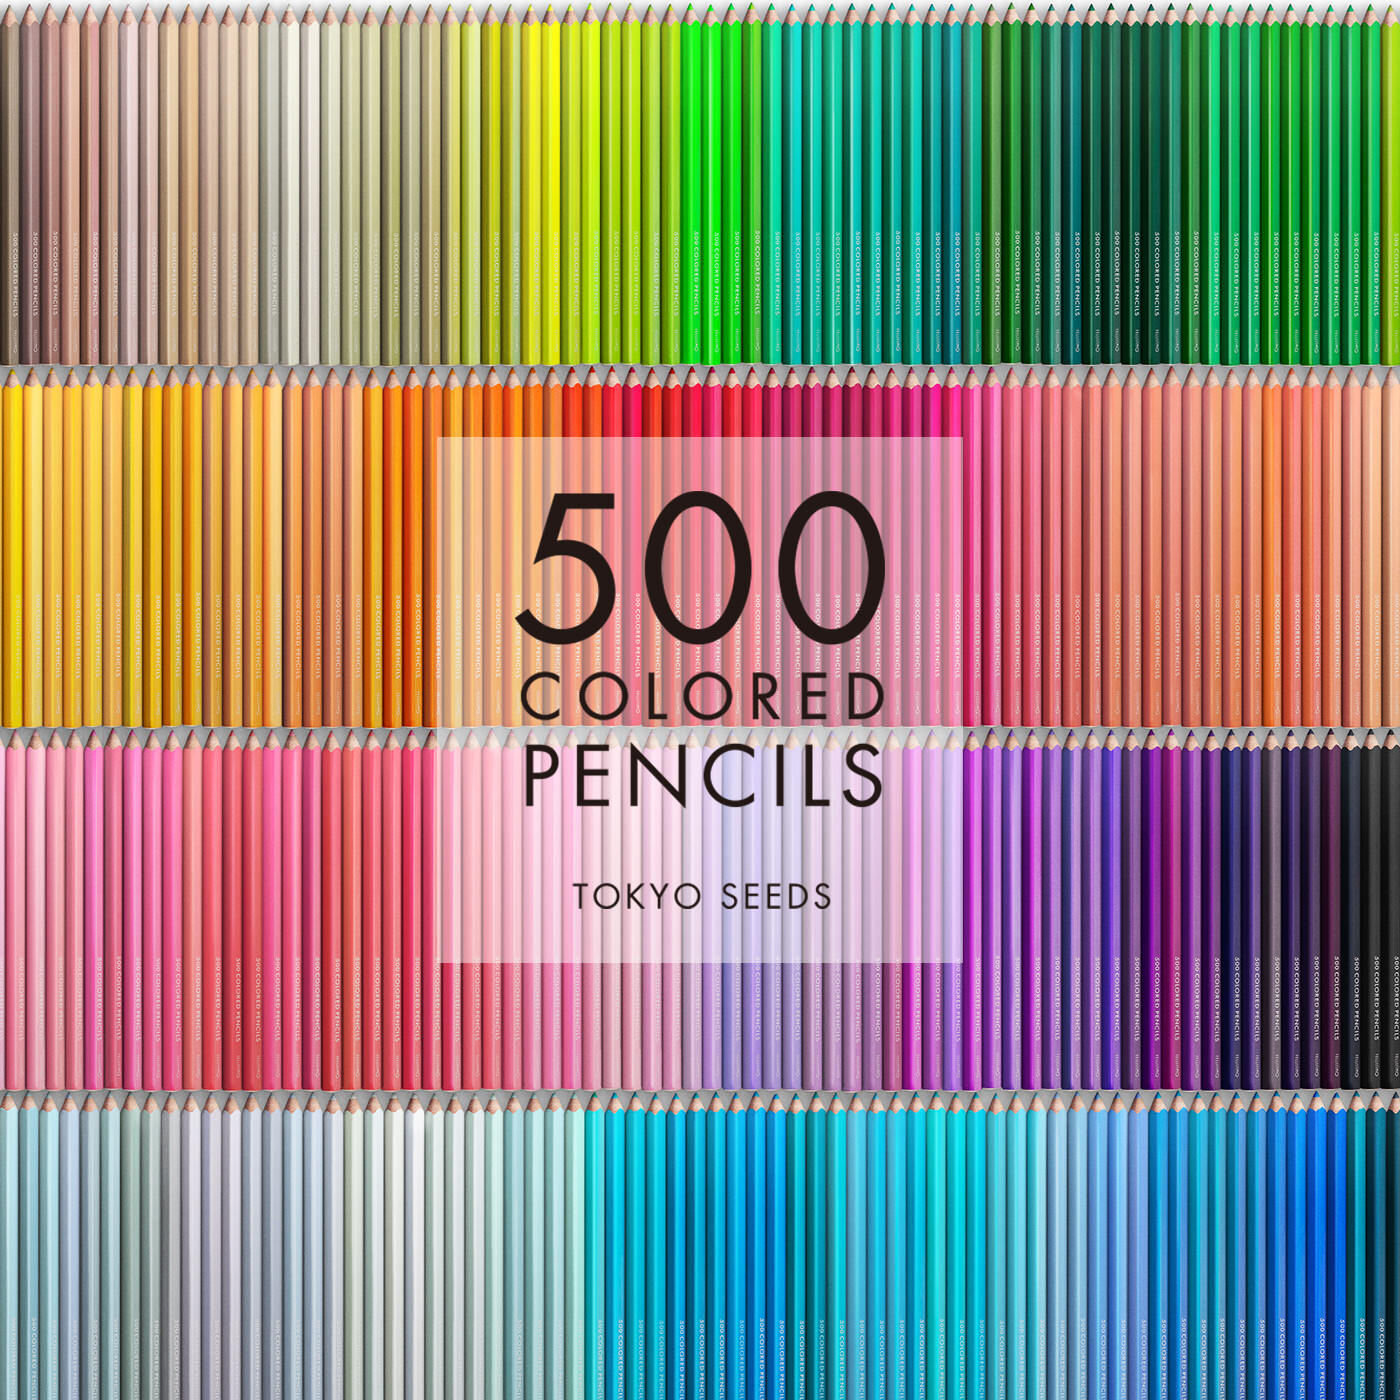 Real Stock|【307/500 MOSS VEIL】500色の色えんぴつ TOKYO SEEDS|1992年、世界初の「500色」という膨大な色数の色えんぴつが誕生して以来、その販売数は発売当初から合わせると、世界55ヵ国10万セット以上。今回、メイド・イン・ジャパンにこだわり、すべてが新しく生まれ変わって登場しました。